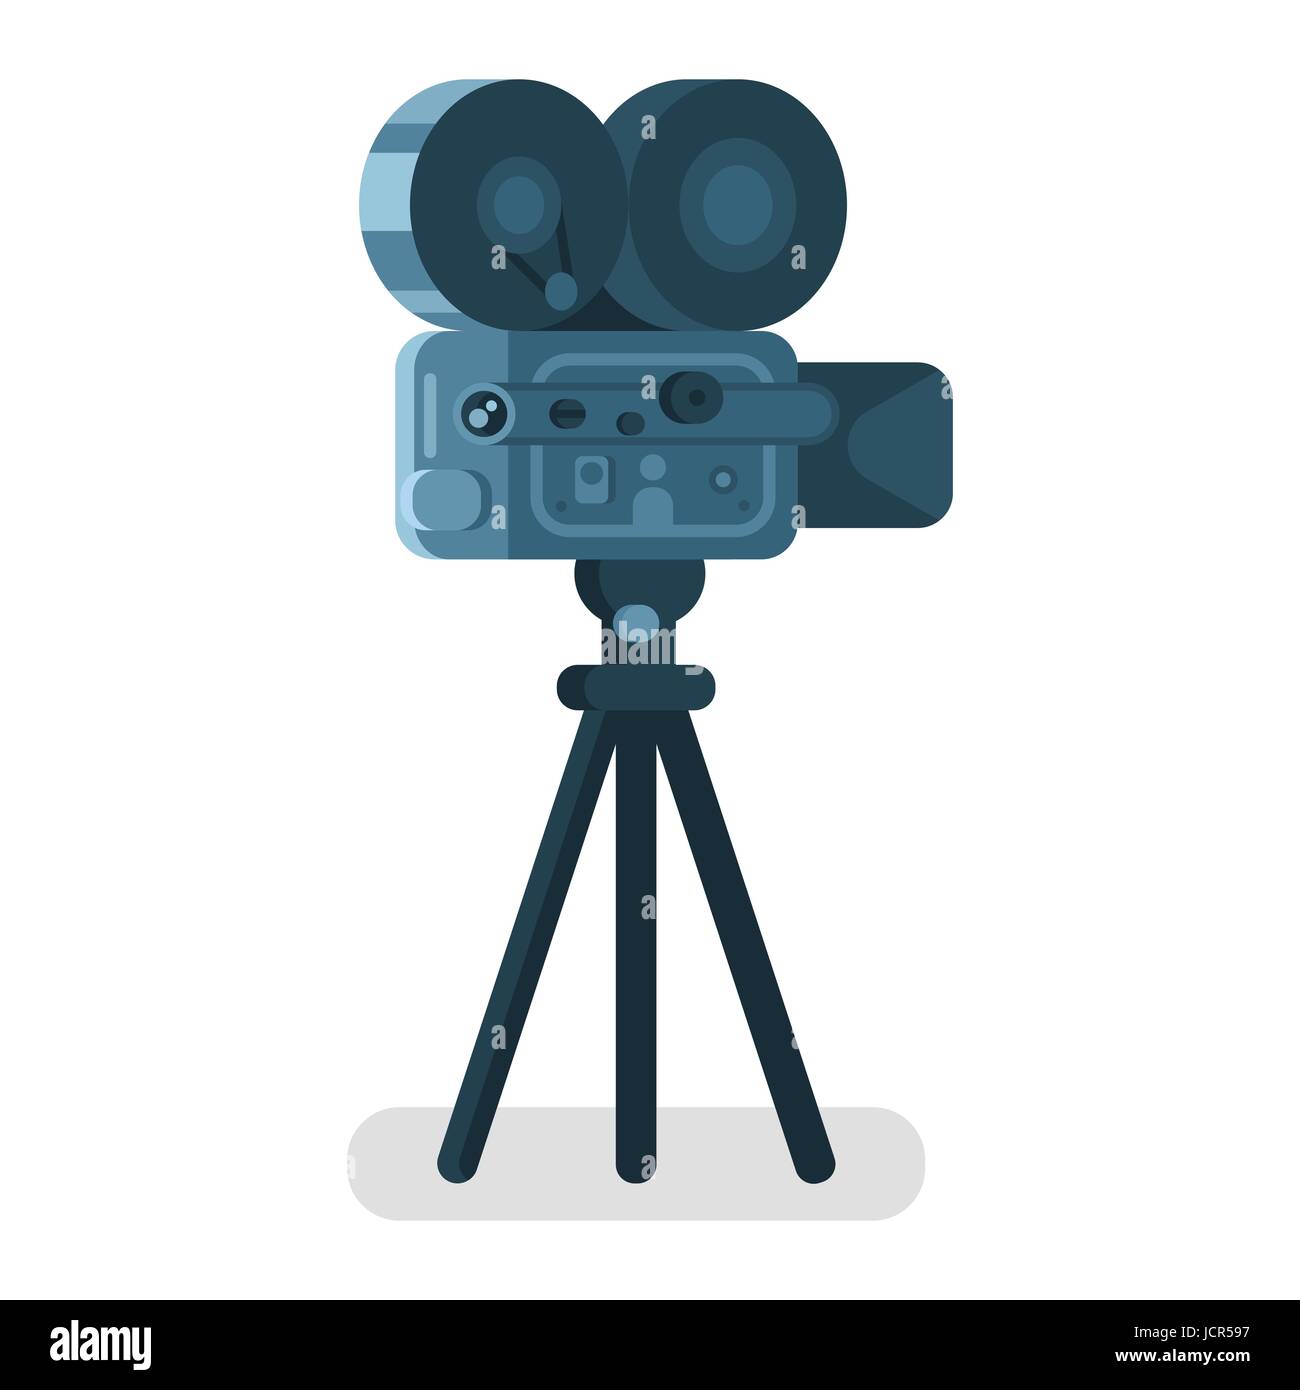 Vektorgrafik flachen Stil der alten Kino-Kamera. Symbol für Online-Filme.  Isoliert auf weißem Hintergrund Stock-Vektorgrafik - Alamy